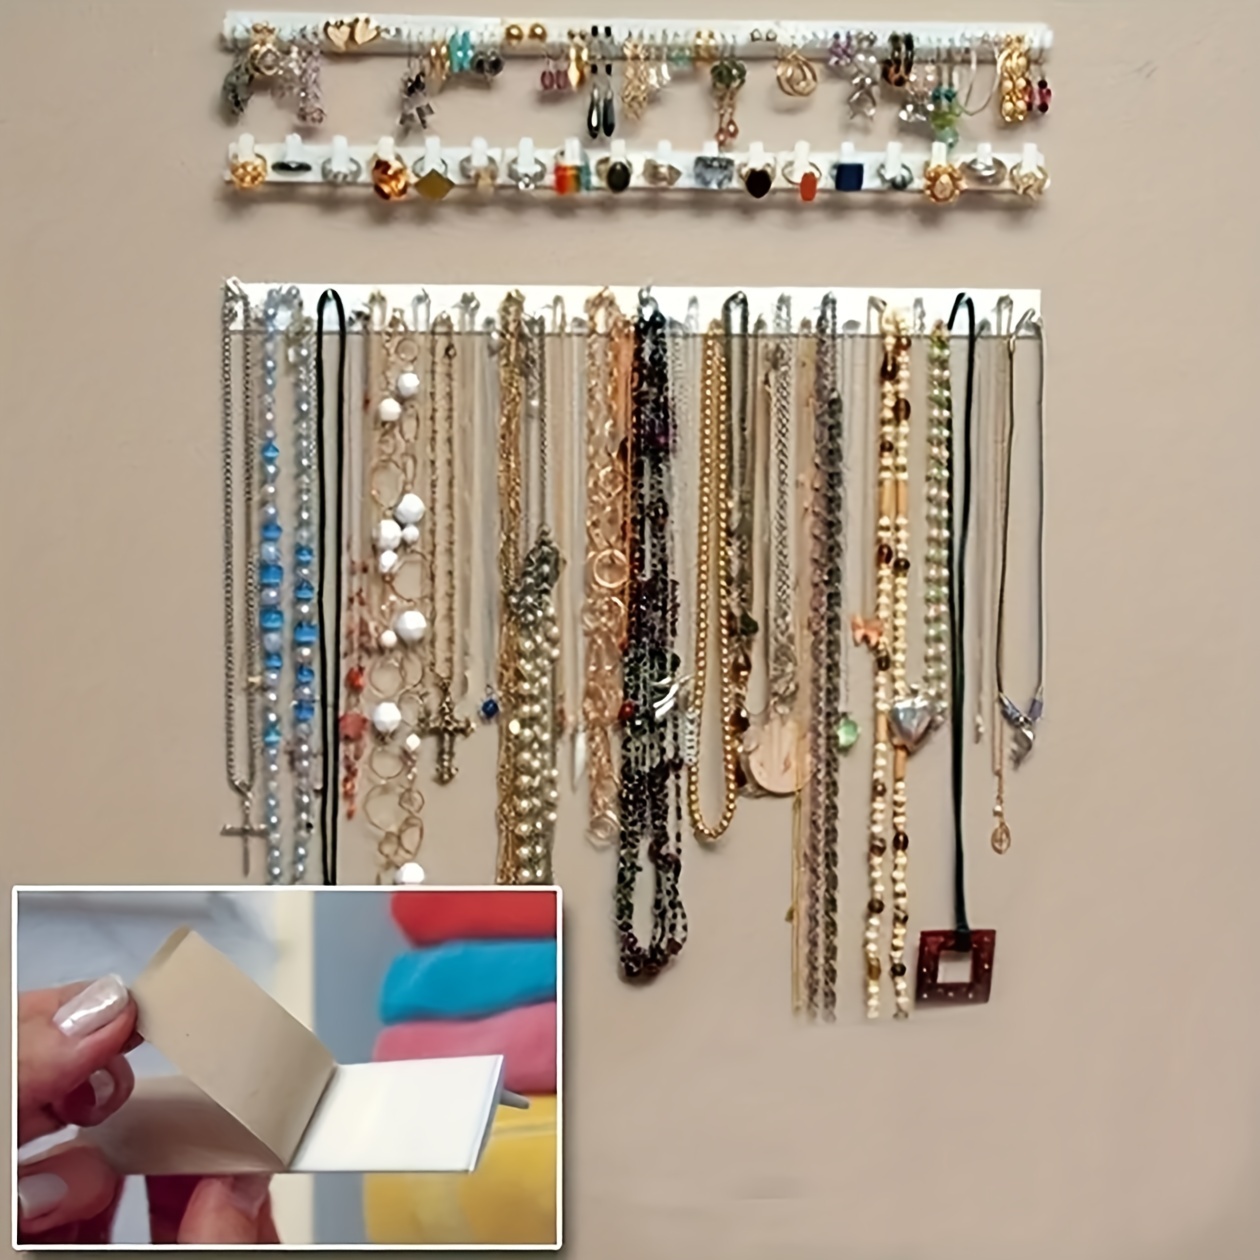 Un bonito organizador de joyas y collares hecho con una percha